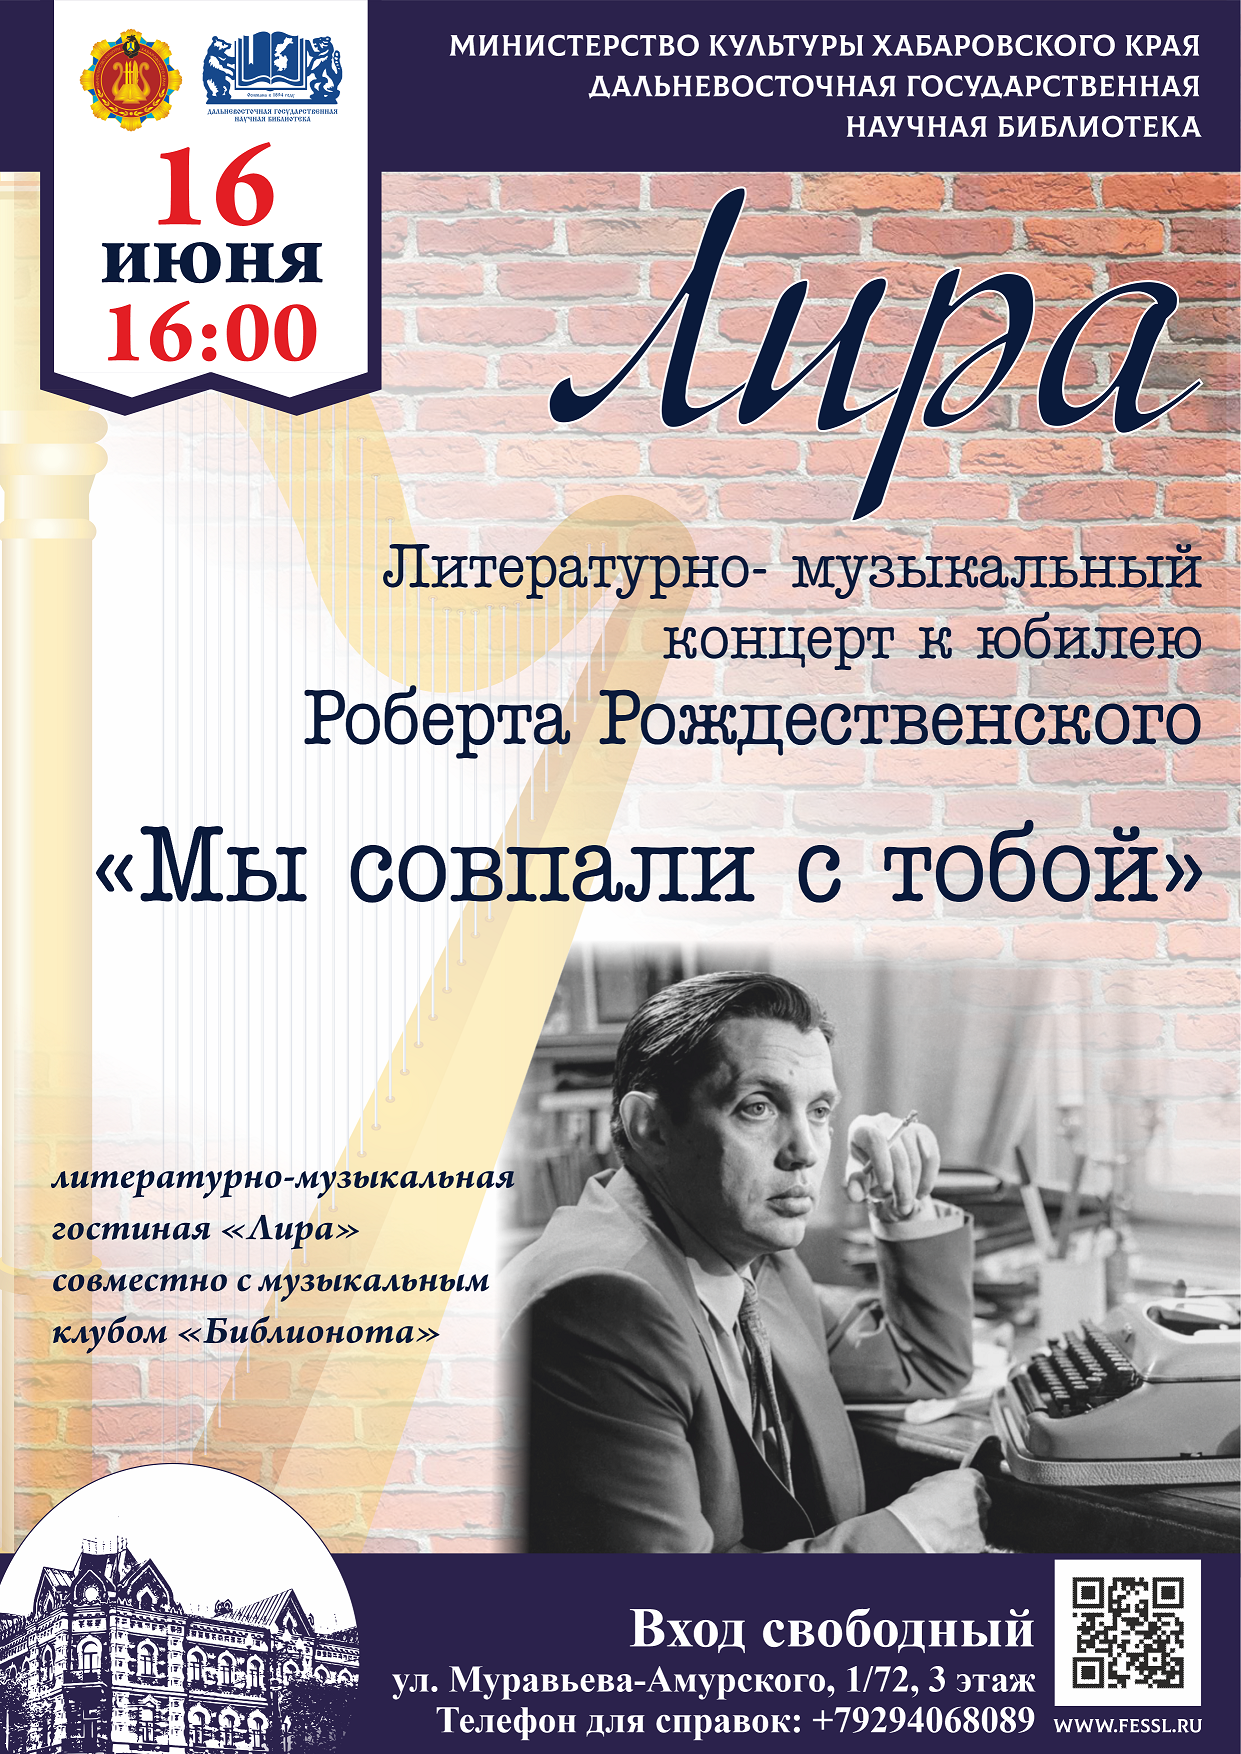 Друзья, 16 июня в 16:00, накануне юбилея Роберта Рождественского, состоится литературно-музыкальный концерт «Мы совпали с тобой».